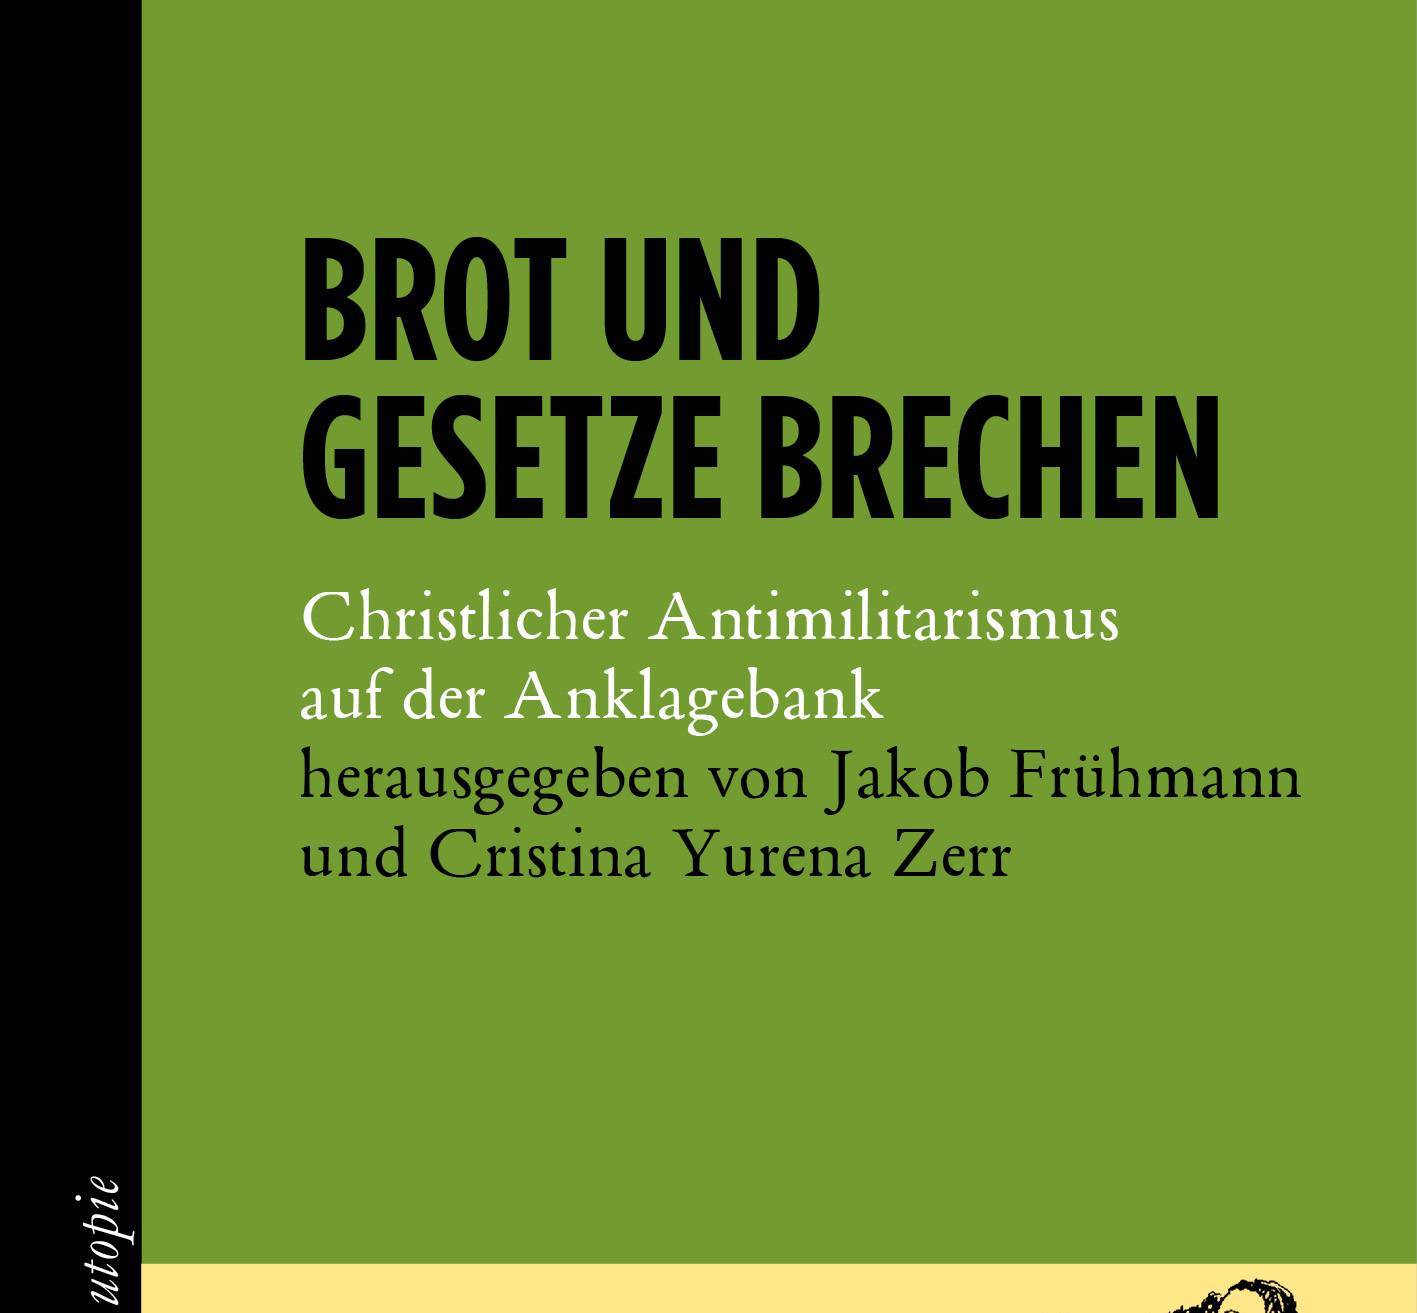  „Brot und Gesetze brechen. Christlicher Antimilitarismus auf der Anklagebank“ ist im Mandelbaum-Verlag erschienen und kostet im Buchhandel 17 Euro. 